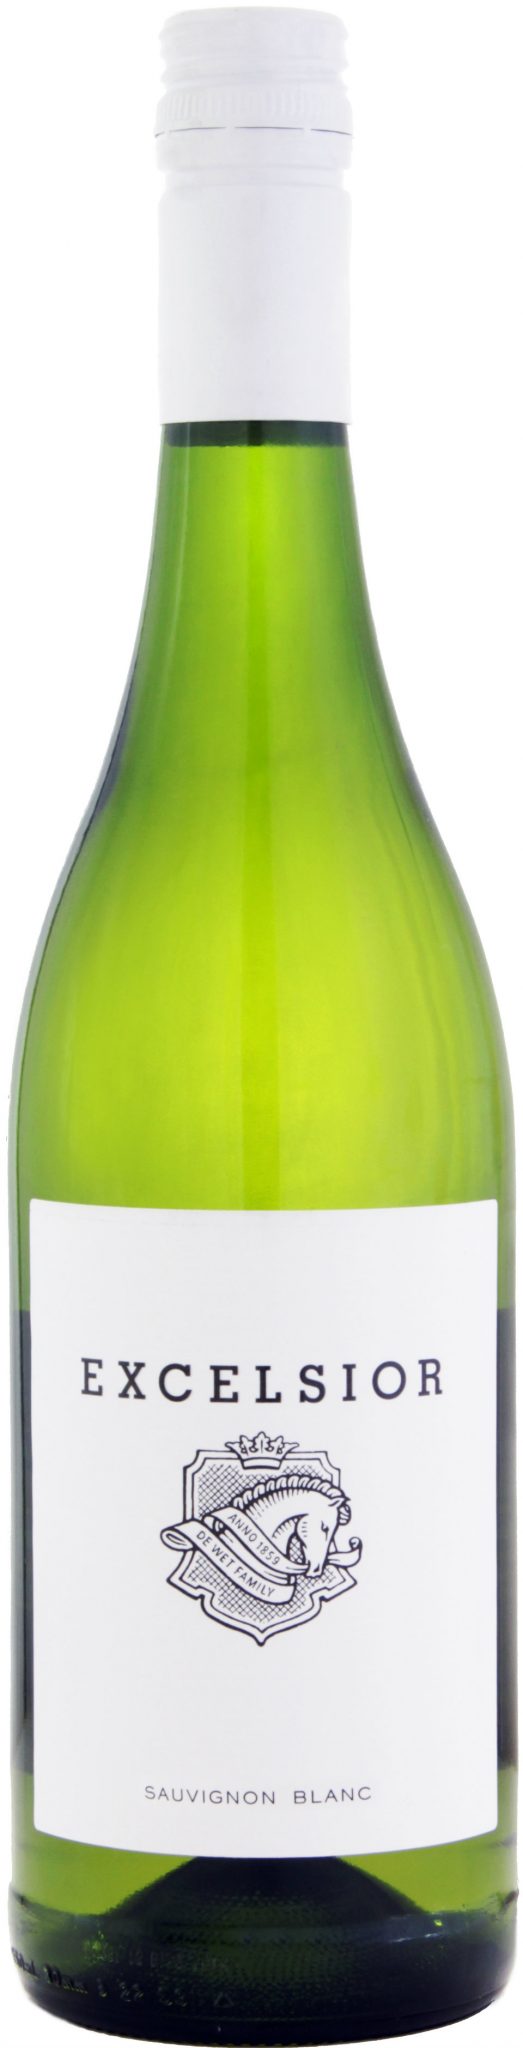 Excelsior - Sauvignon Blanc 2019 75cl Bottle